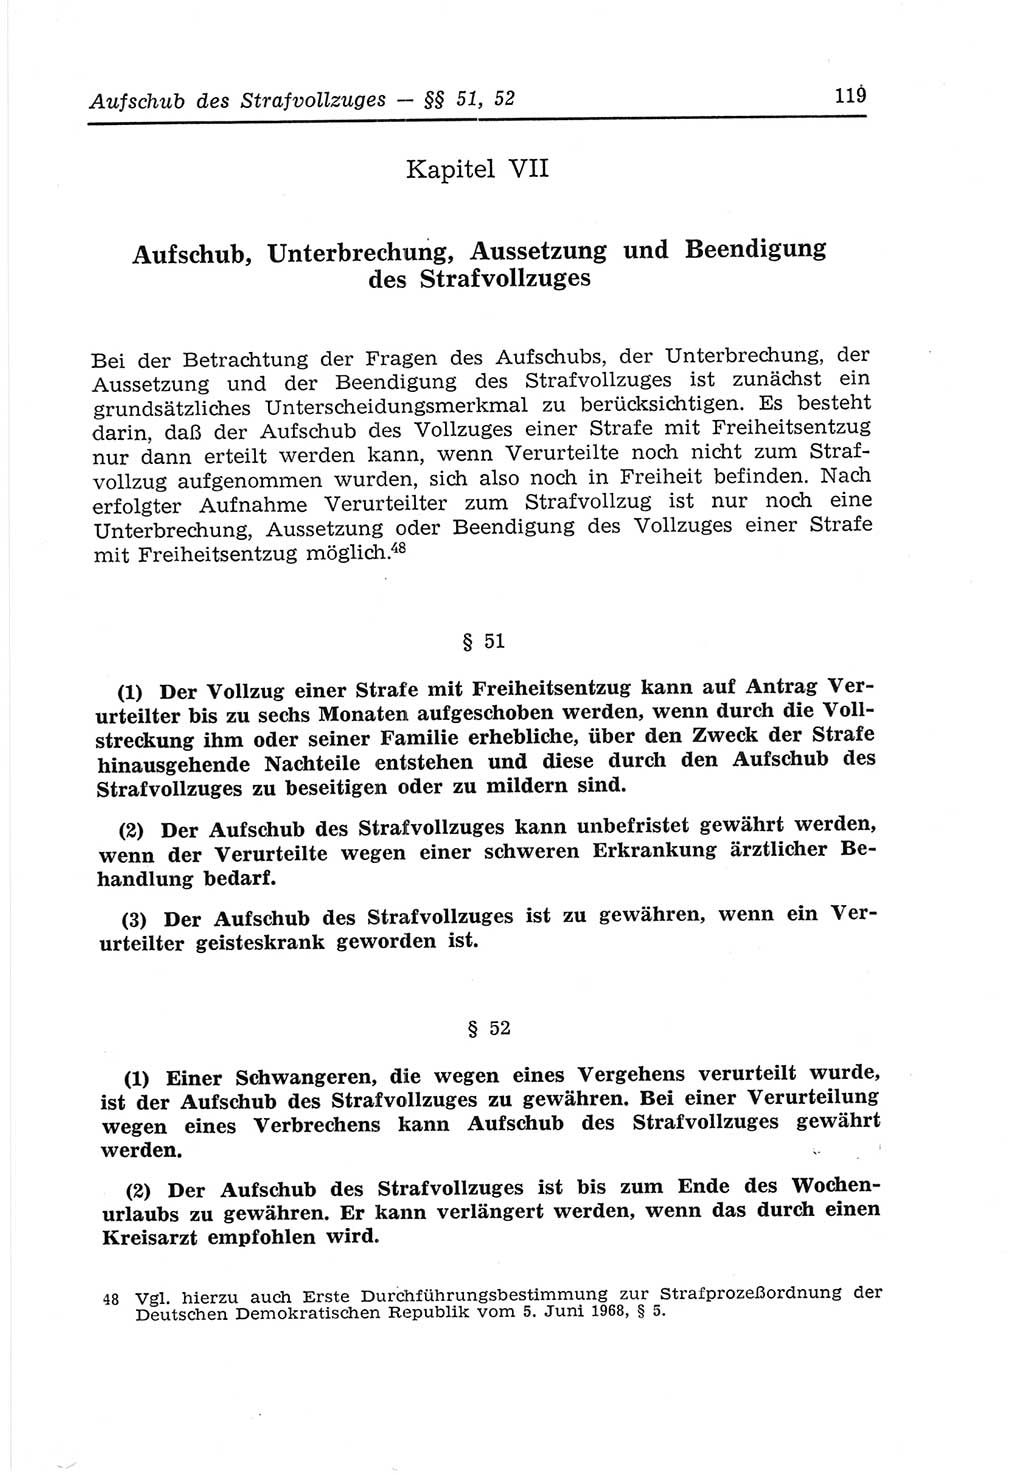 Strafvollzugs- und Wiedereingliederungsgesetz (SVWG) der Deutschen Demokratischen Republik (DDR) 1968, Seite 119 (SVWG DDR 1968, S. 119)